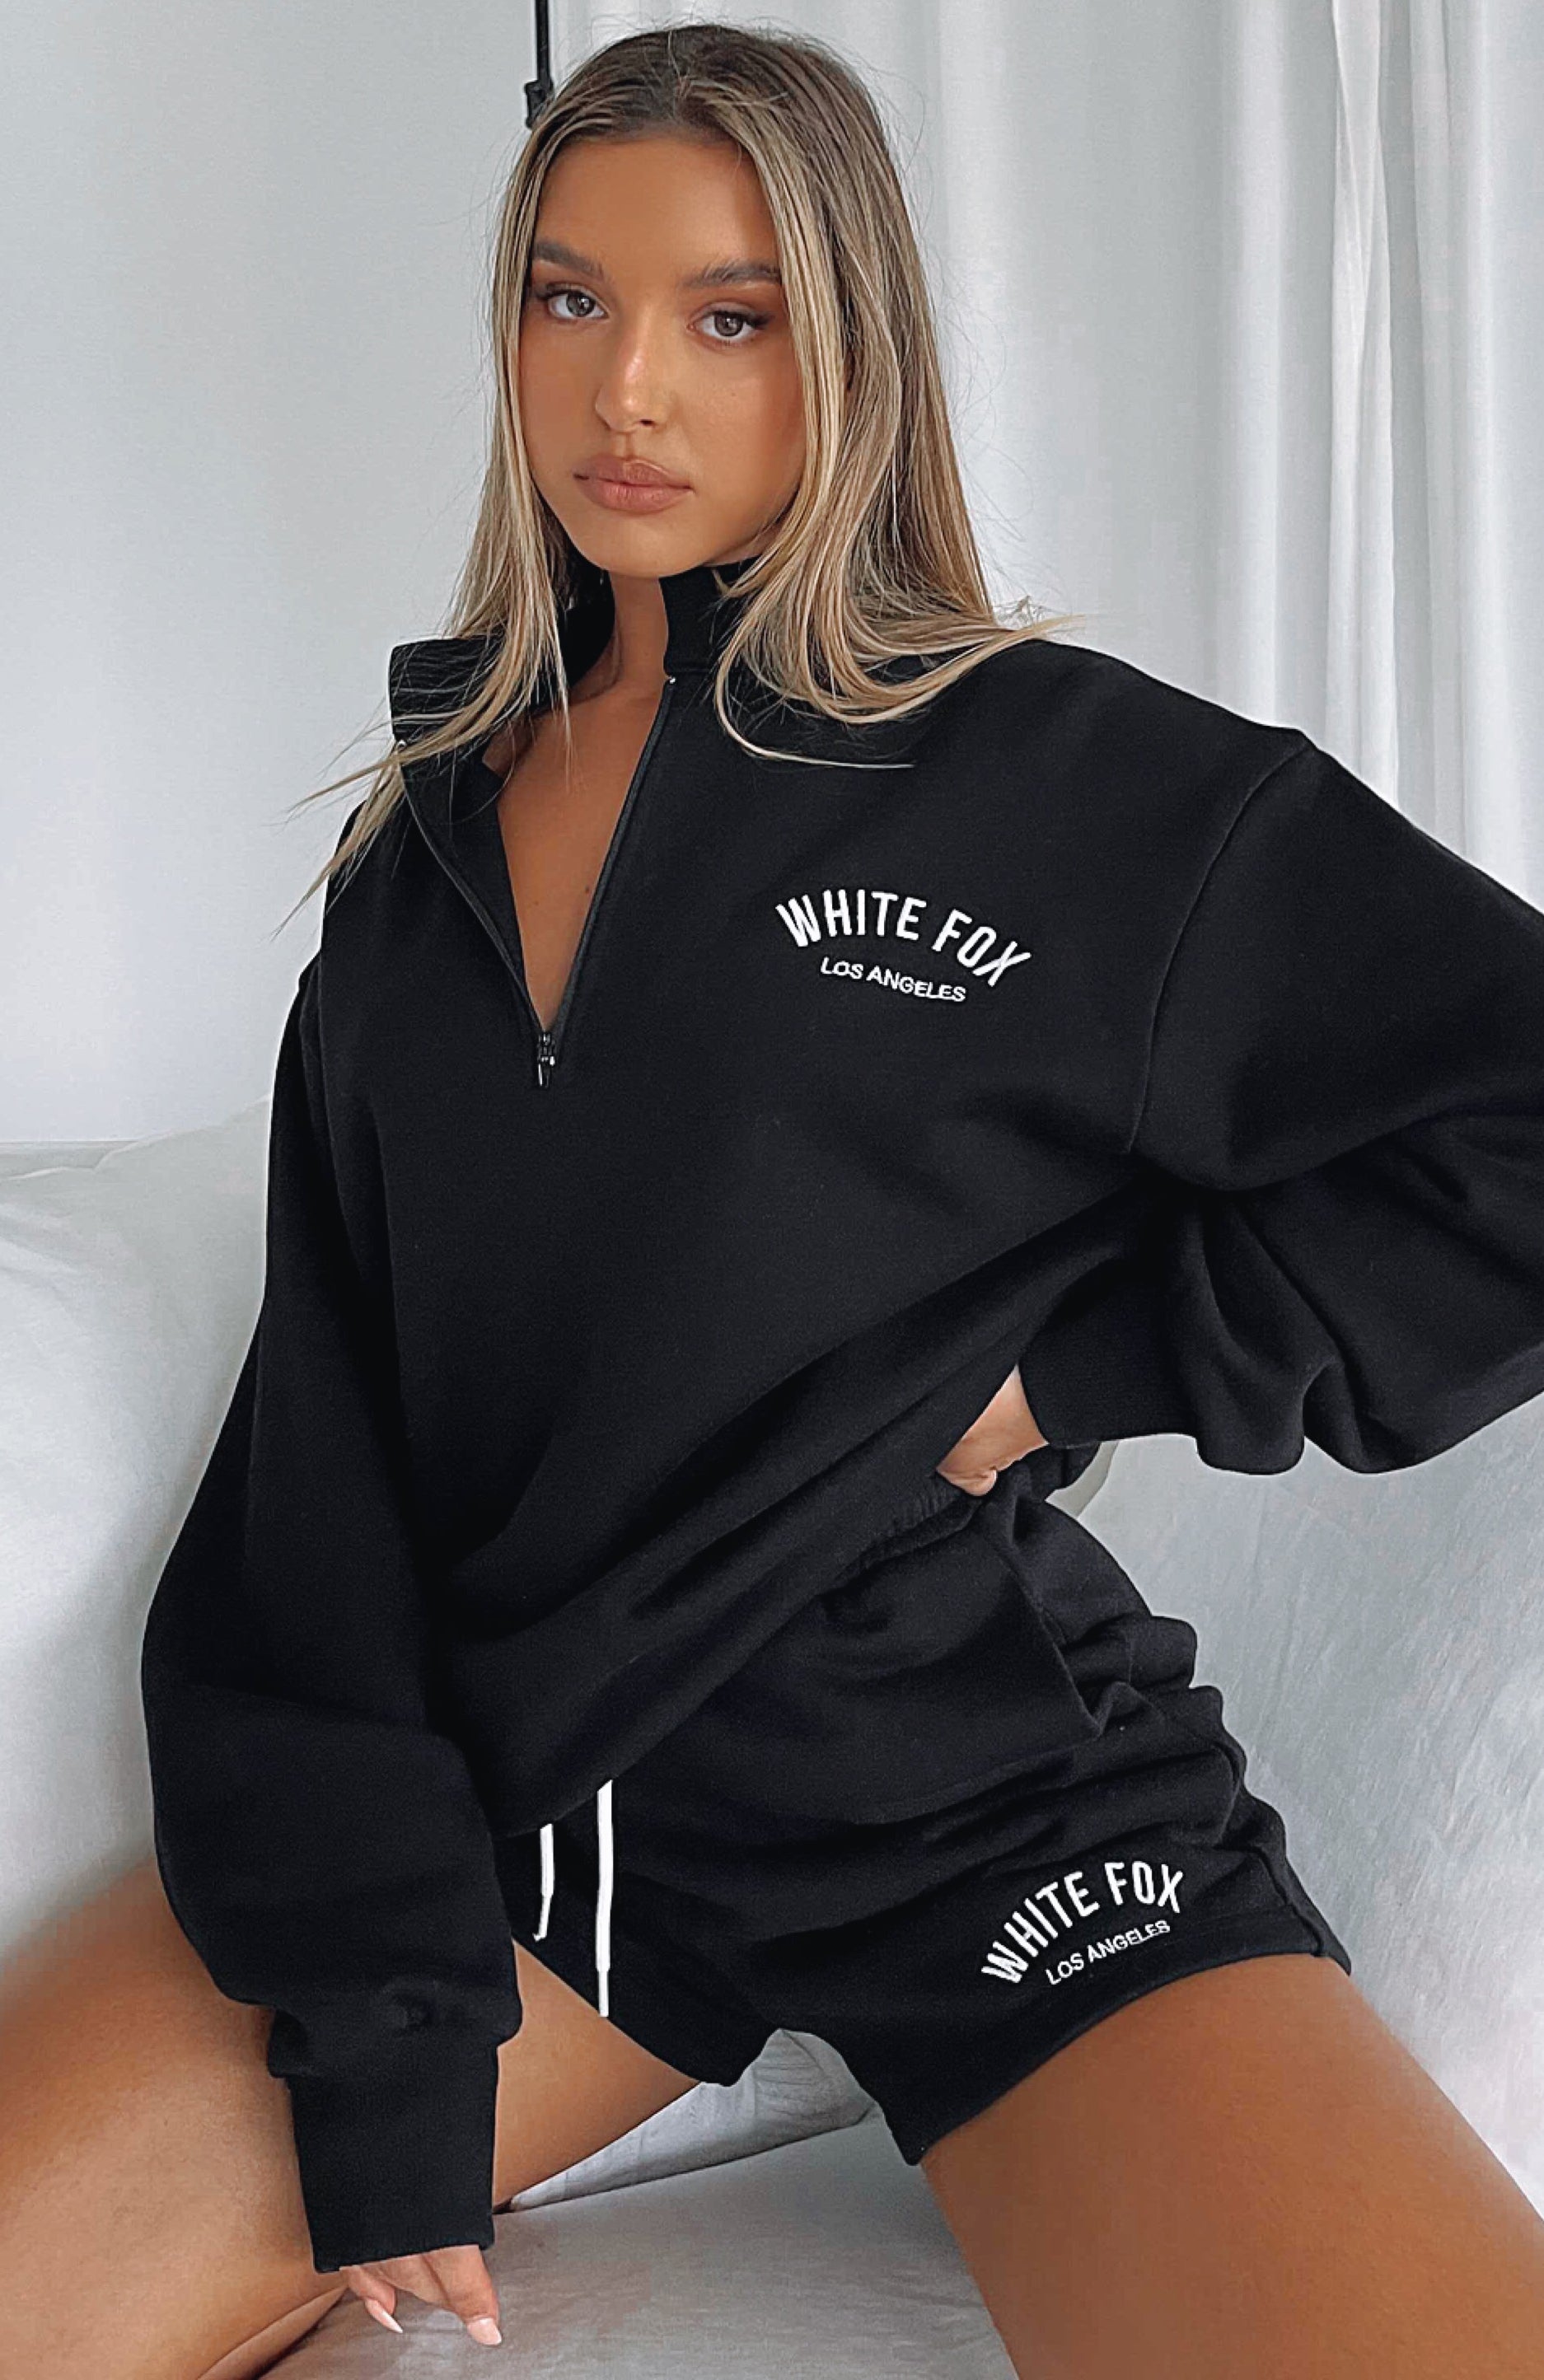 WhiteTrashFabulous/WTF fashions, Sweaters